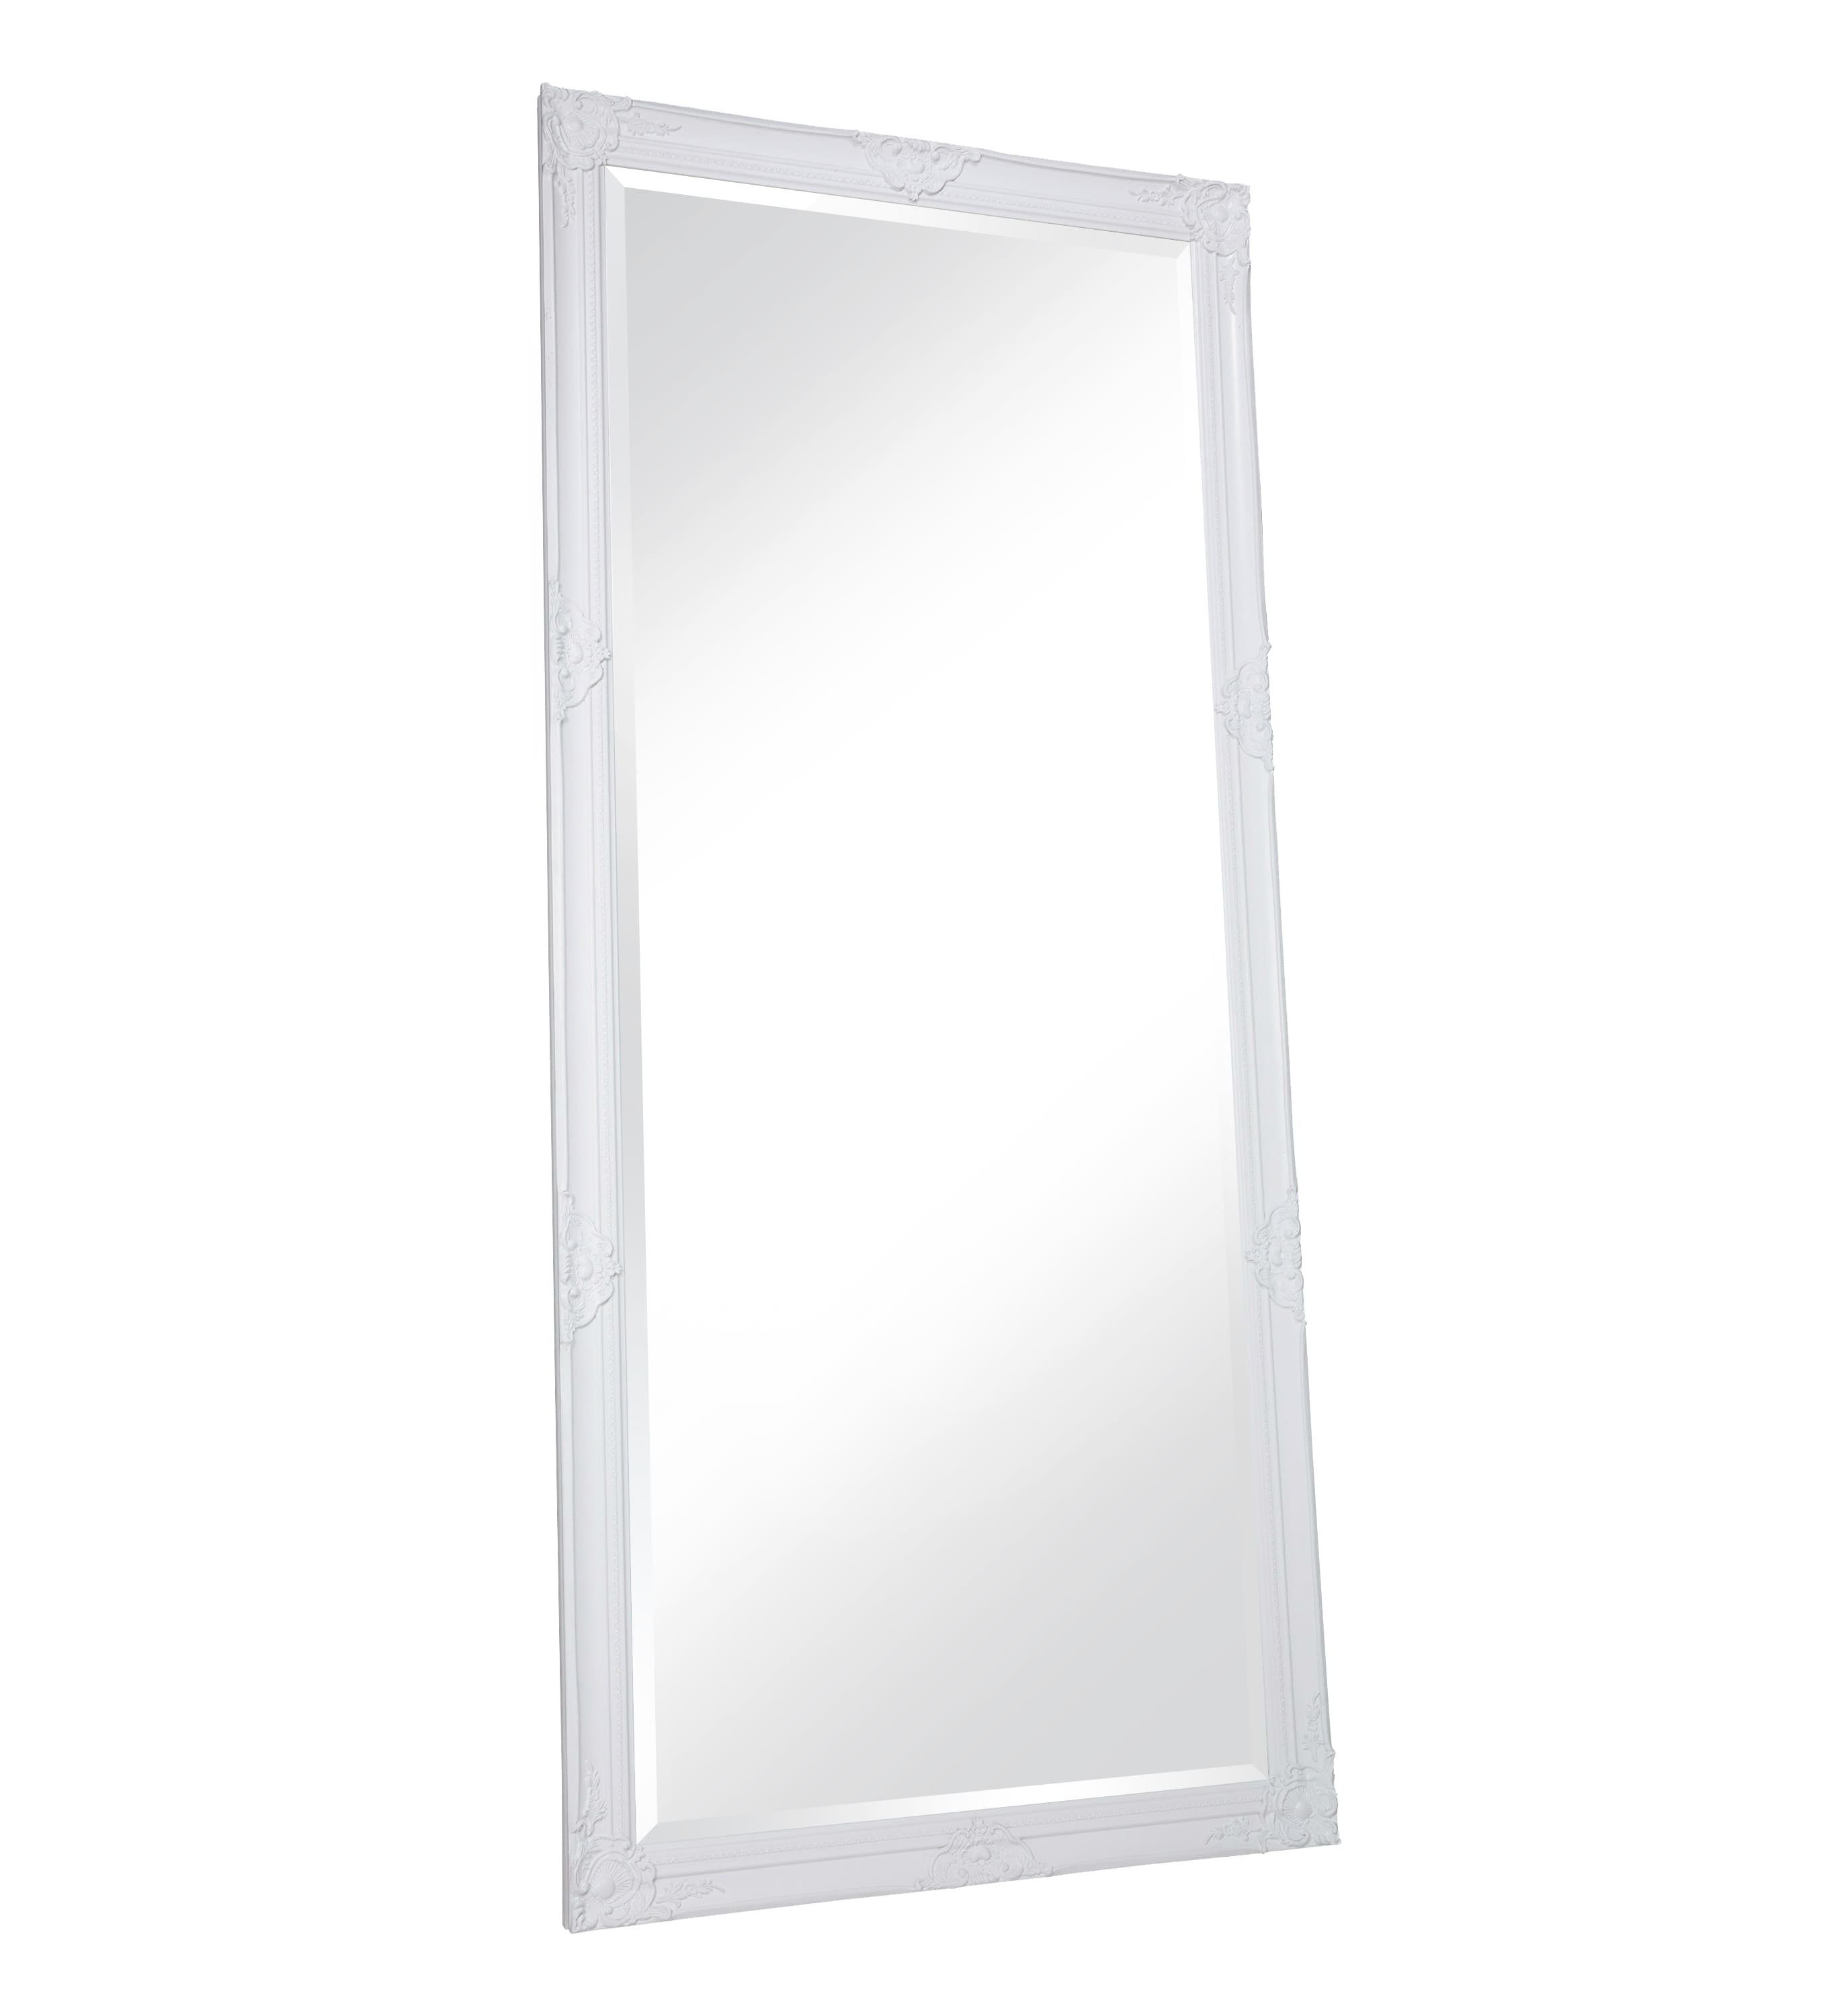 Spiegel LC 180x80 Weiß Antik-Stil LC ca. Barock XL Ganzkörperspiegel Home cm Wandspiegel Spiegel Home